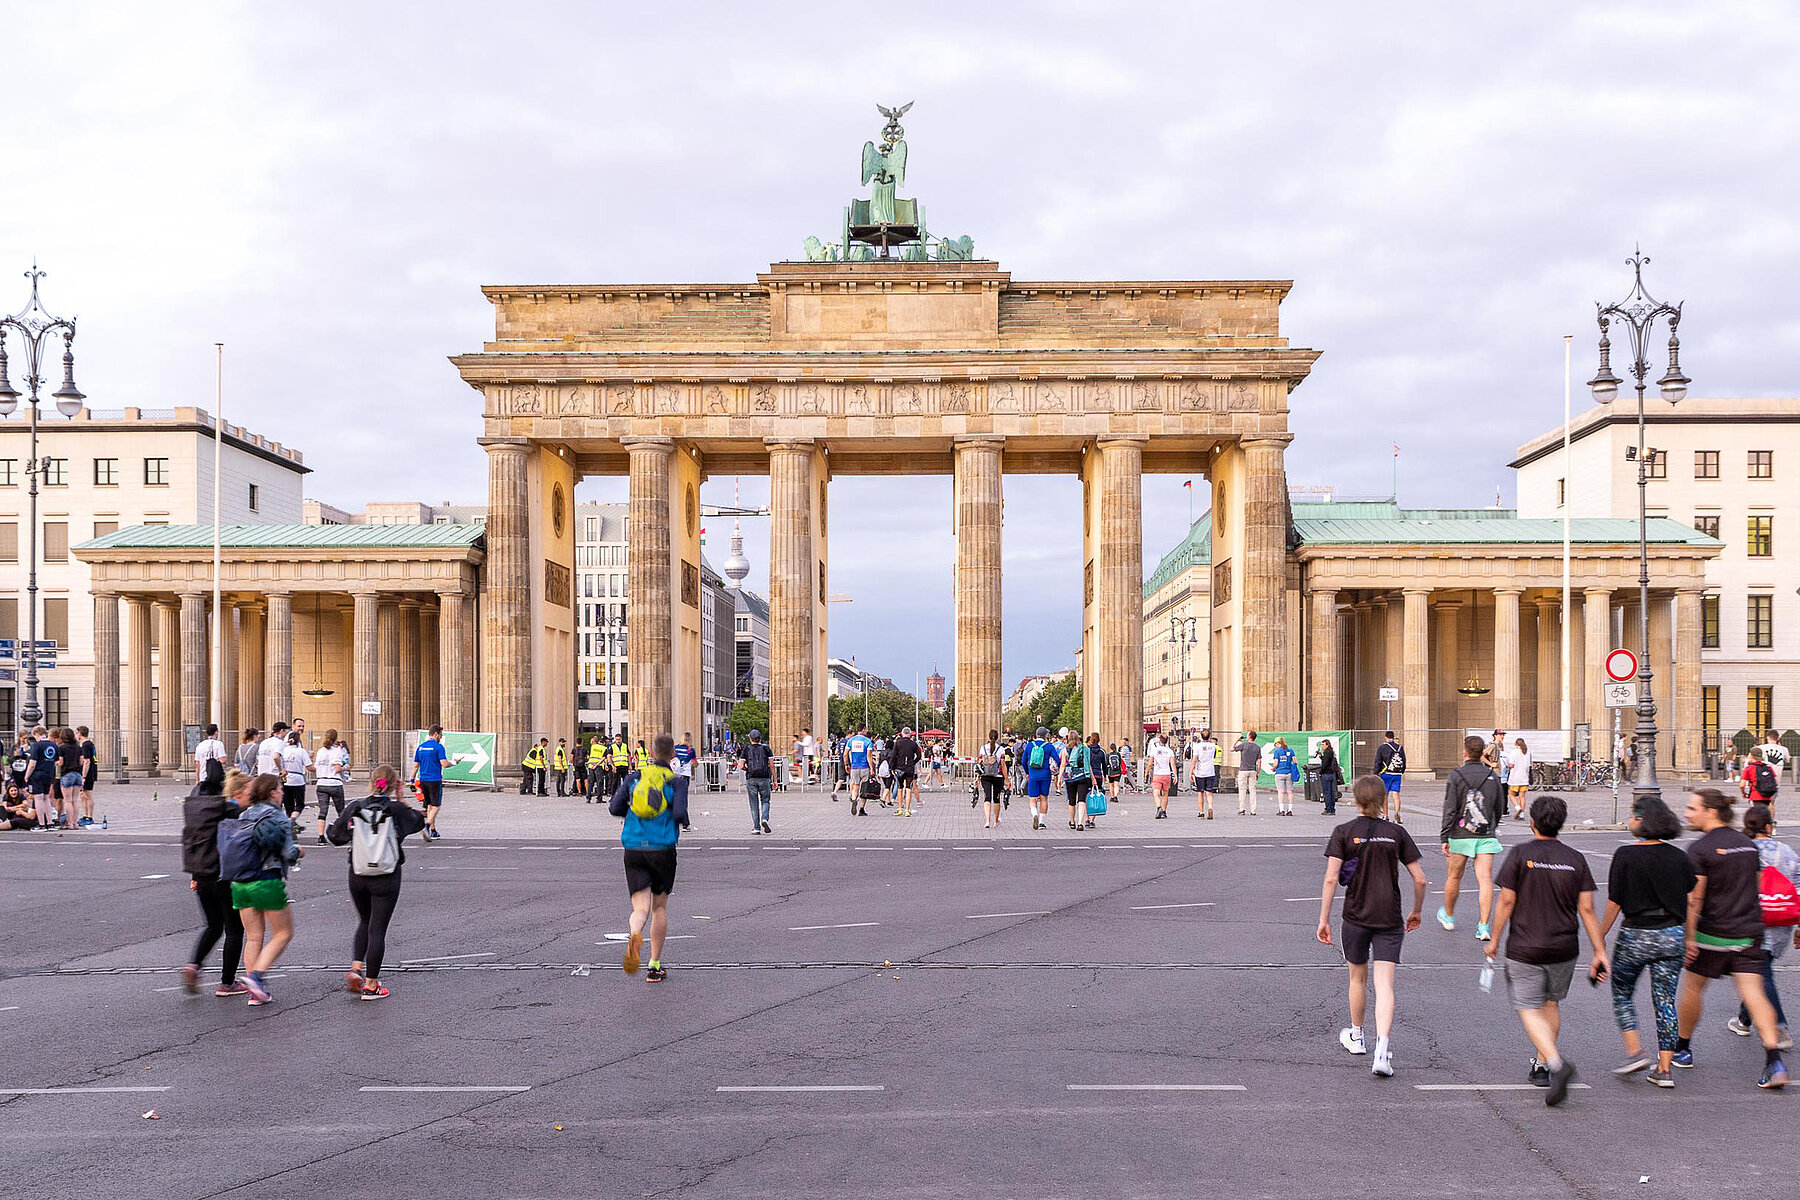 People walk through the Brandenburg Gate.